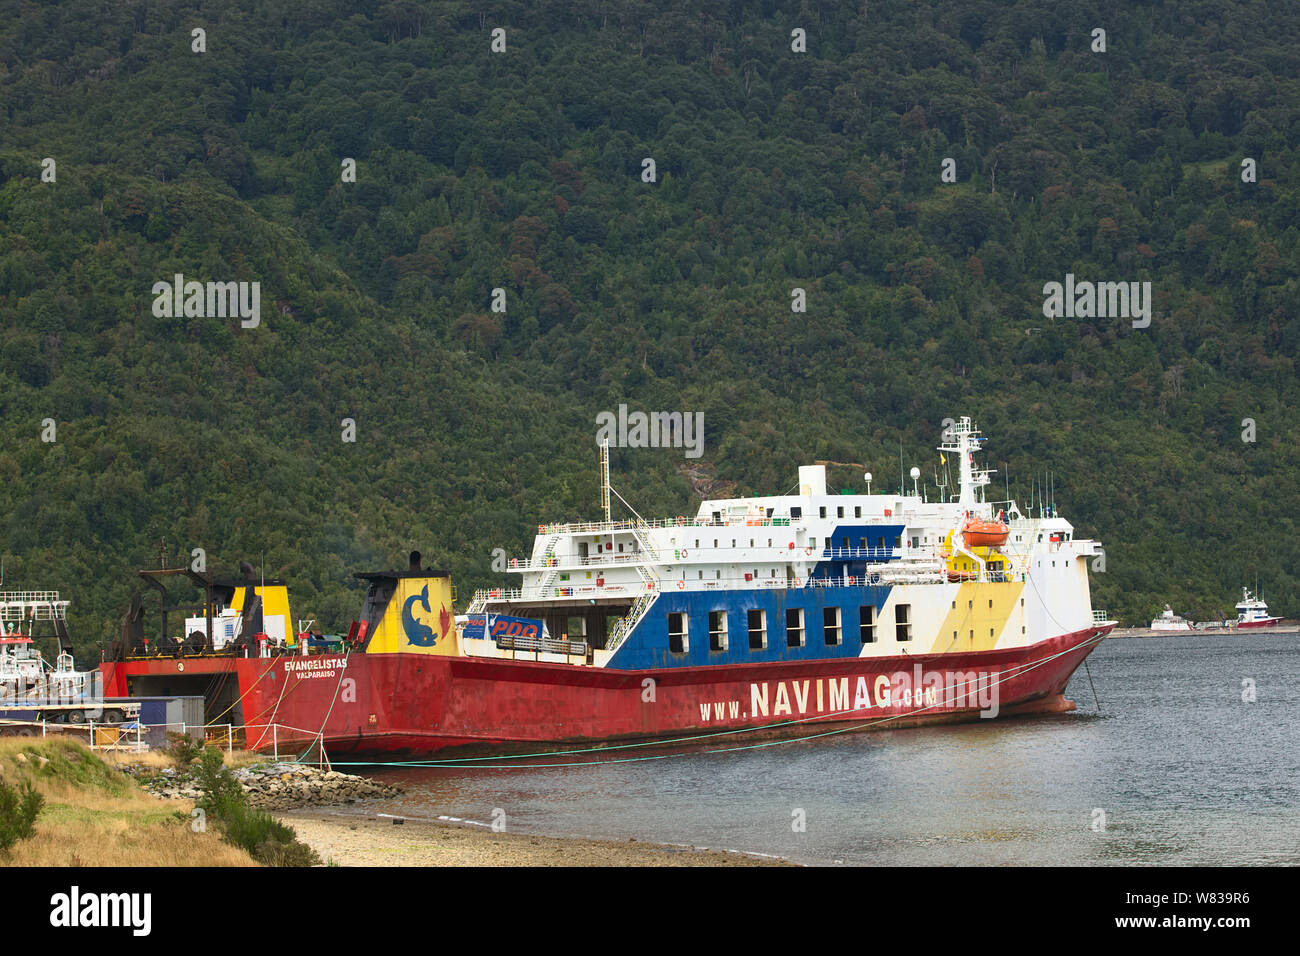 PUERTO CHACABUCO, Cile - 16 febbraio 2016: Traghetto della società Navimag in Puerto Chacabuco alla testa del fiordo Aisen nella regione di Aysen, Cile Foto Stock